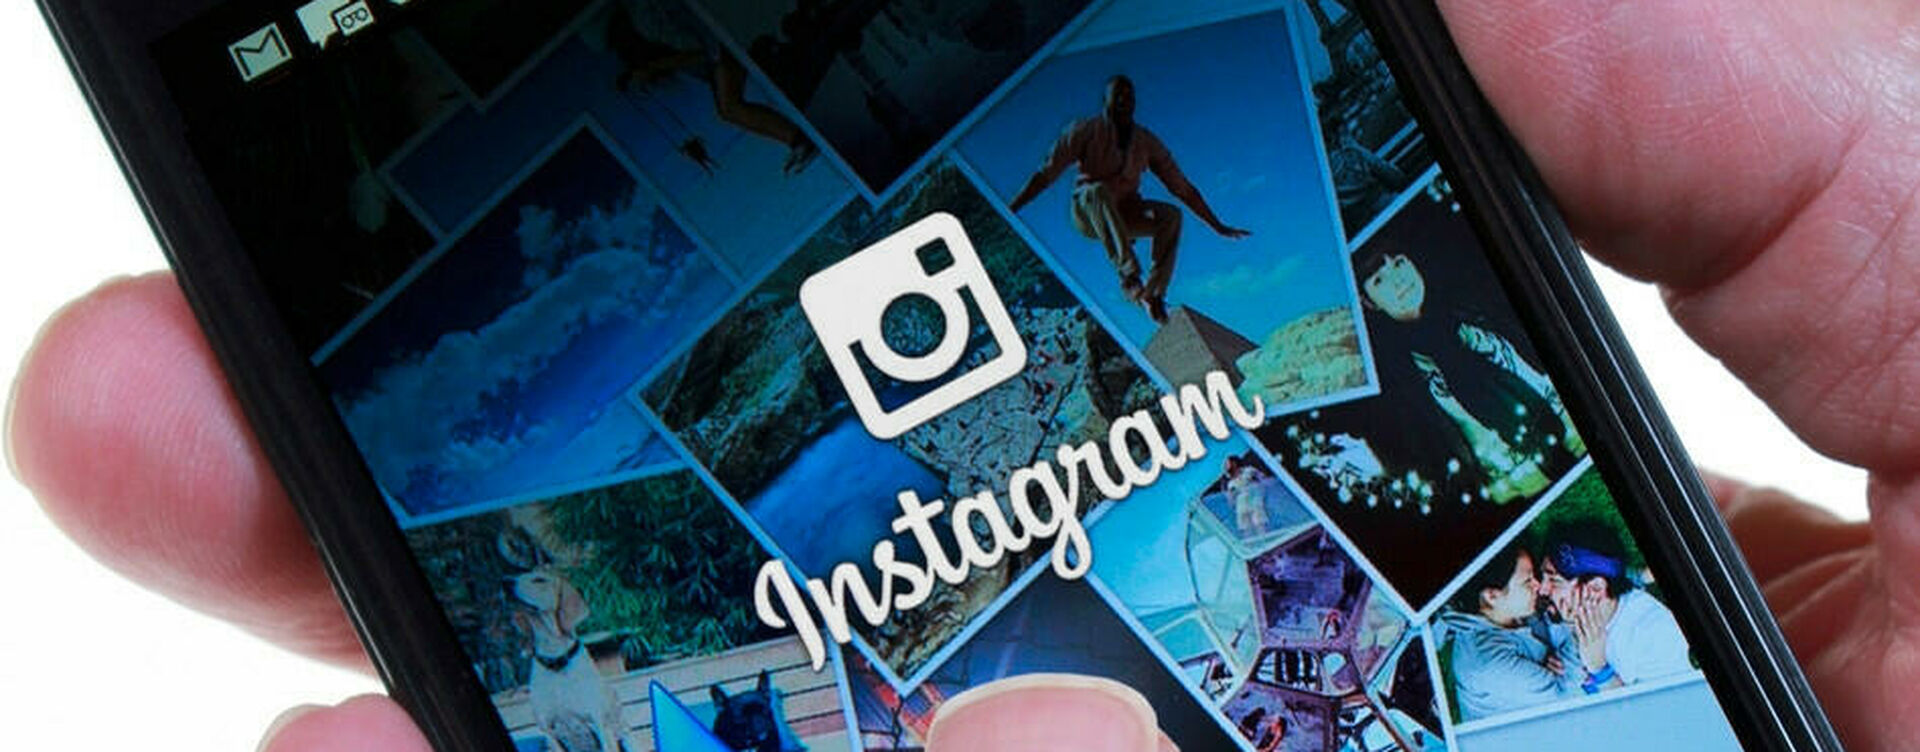 Где недорого купить ботов Instagram в рунете и буржунете